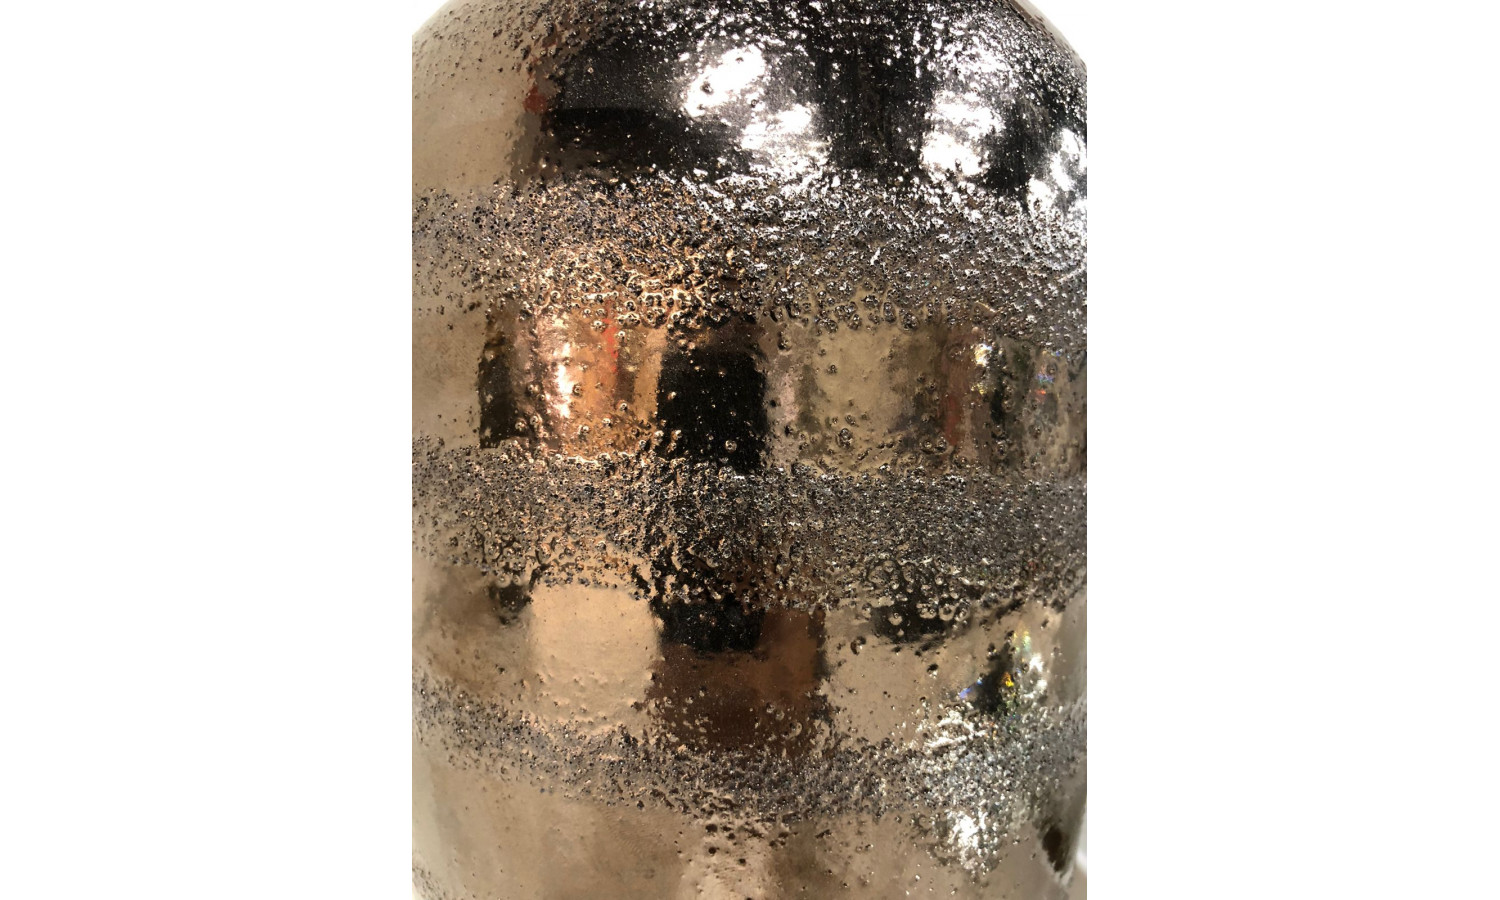 Ваза керамическая с крышкой IST-060, 11,5х30 см, коричневый